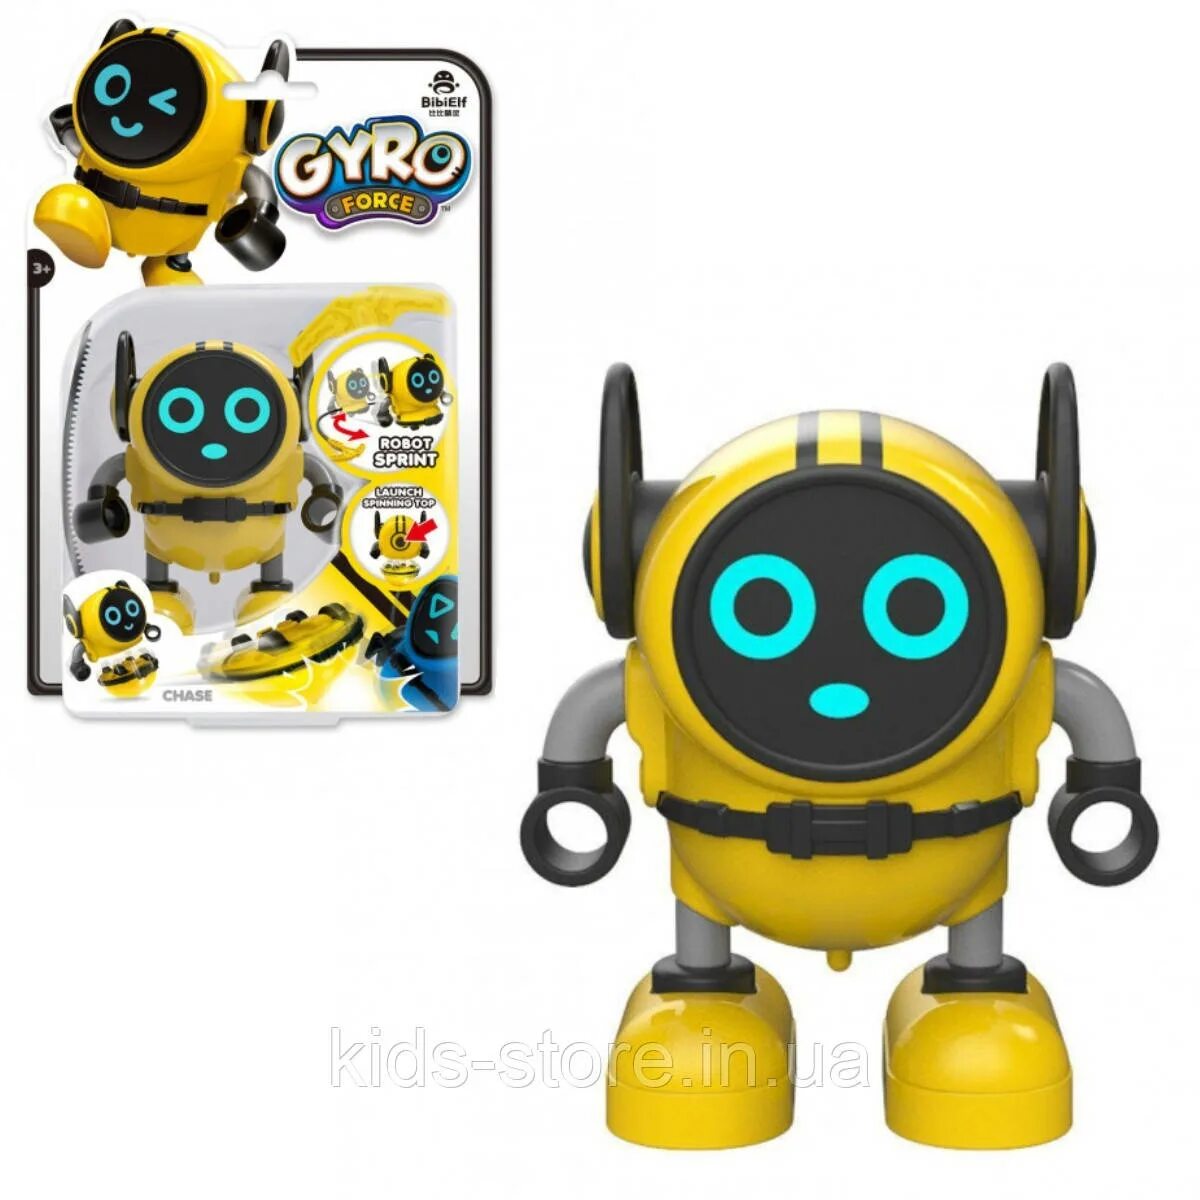 Робот волчок bibielf Gyro. Gyro Force Robot. Gyro Robot игрушка. Игрушки (BB-2). Робот gyro